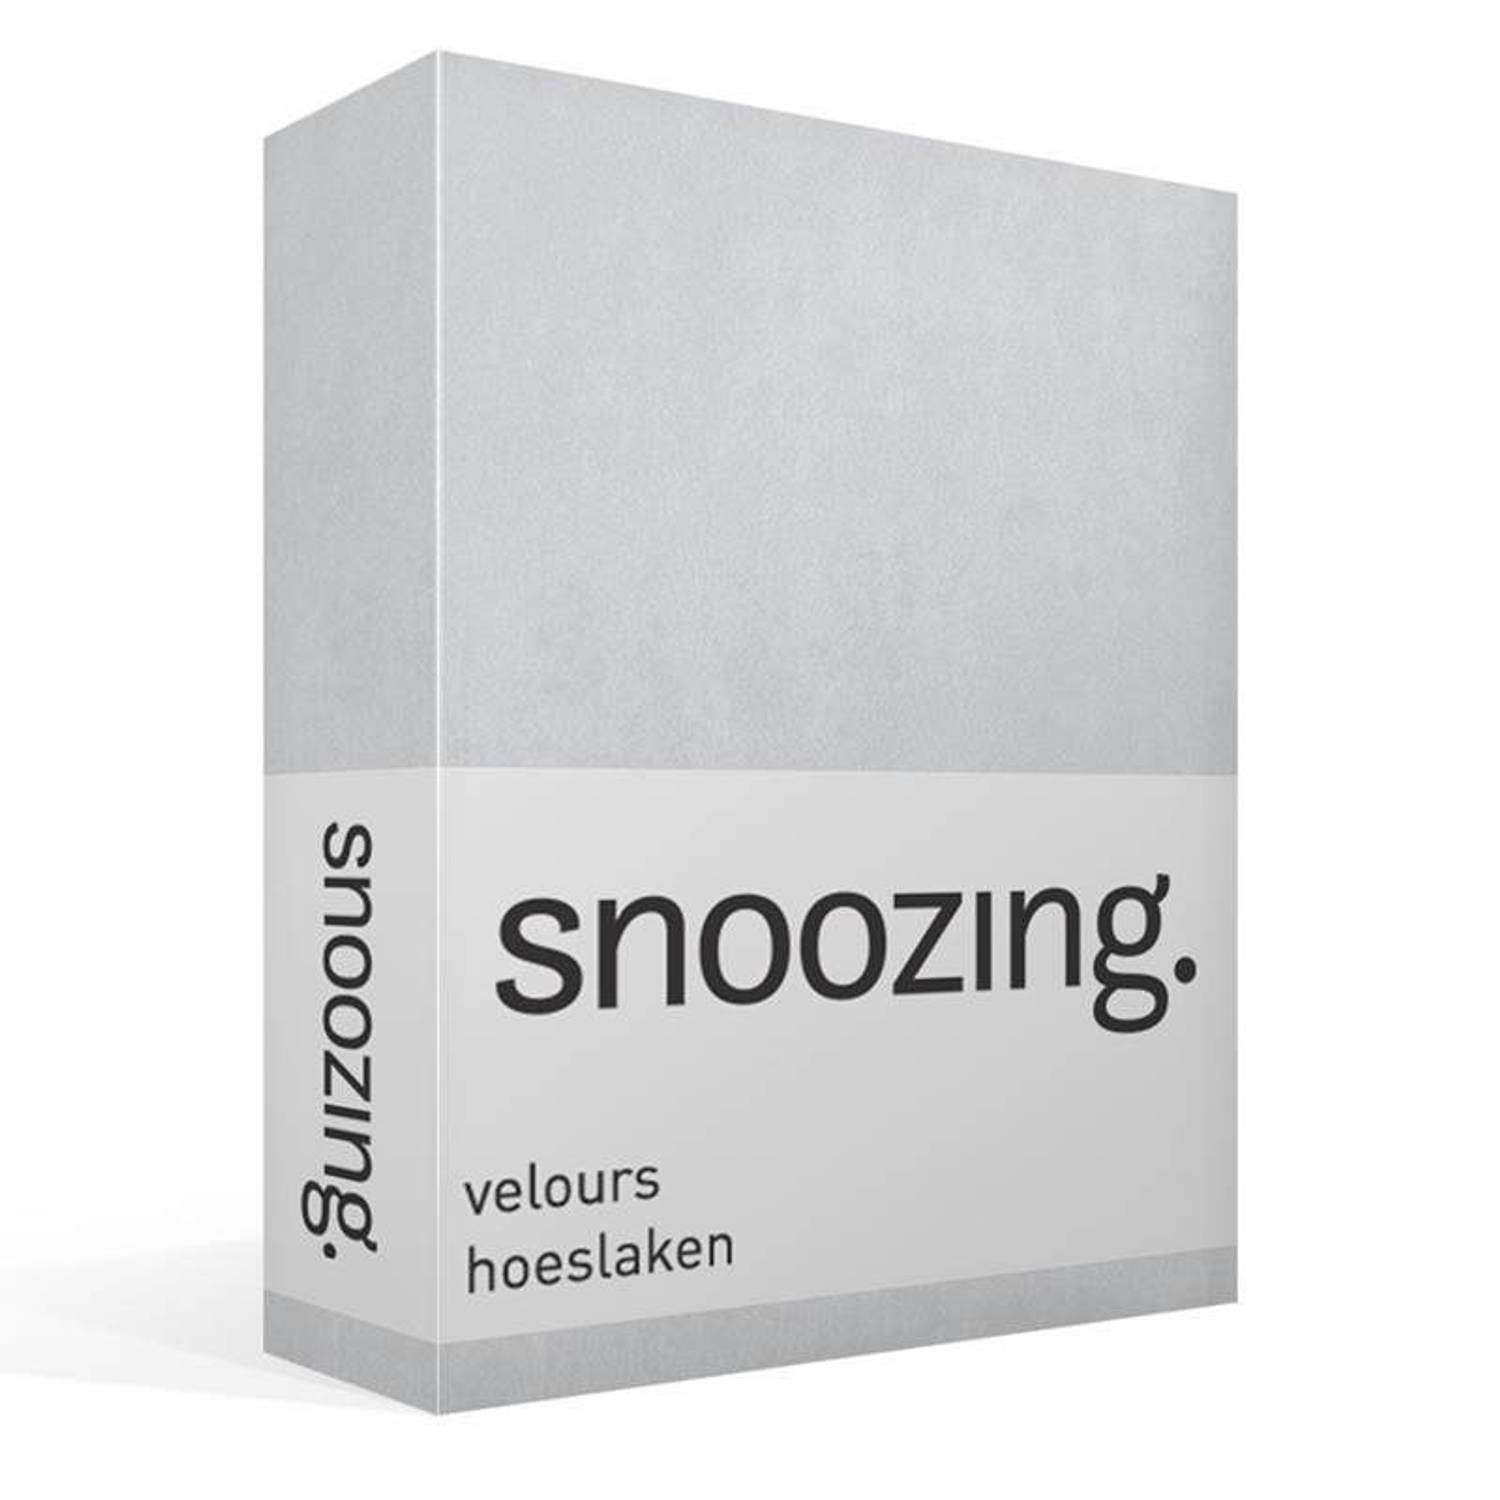 Snoozing velours hoeslaken - Tweepersoons - Grijs